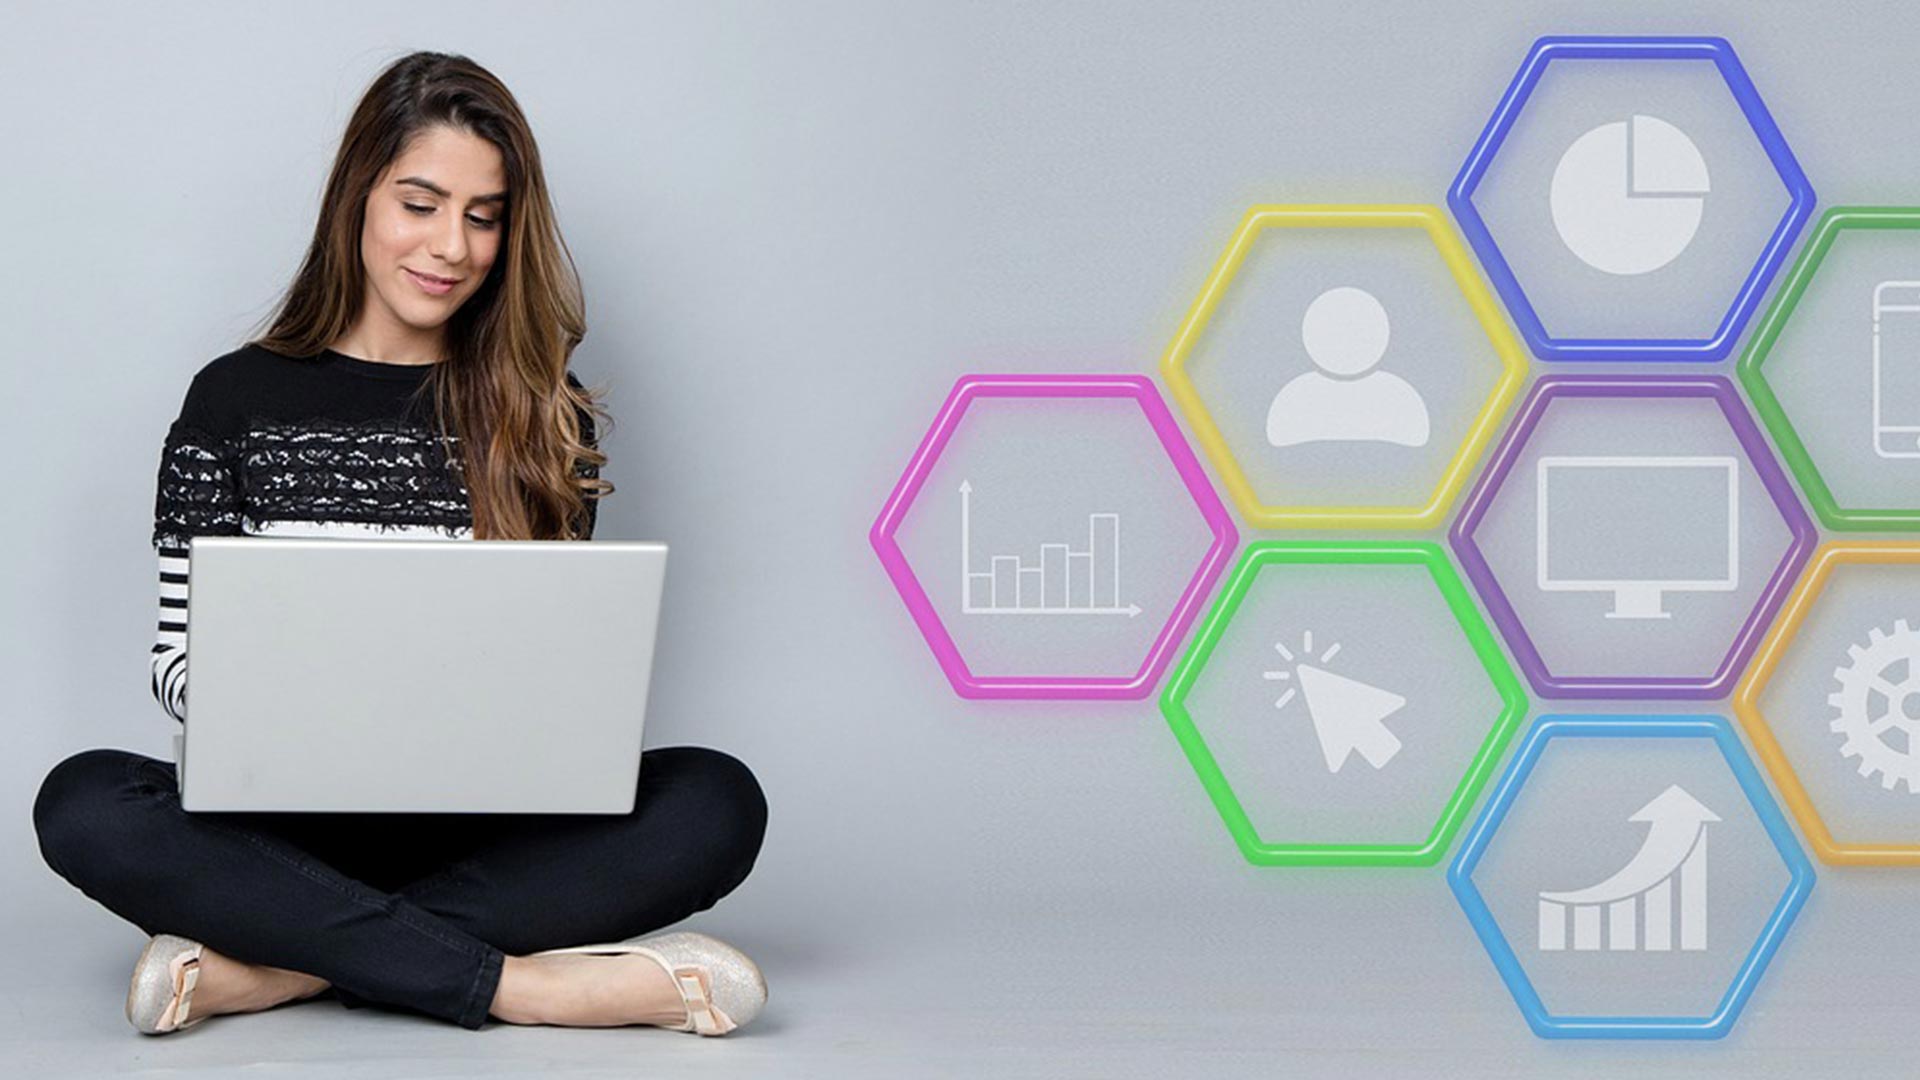 Eine Frau sitzt mit einem Laptop am Boden. Daneben befinden sich verschiedenfarbige Waben, die Marketing und Wachstum symbolisieren.